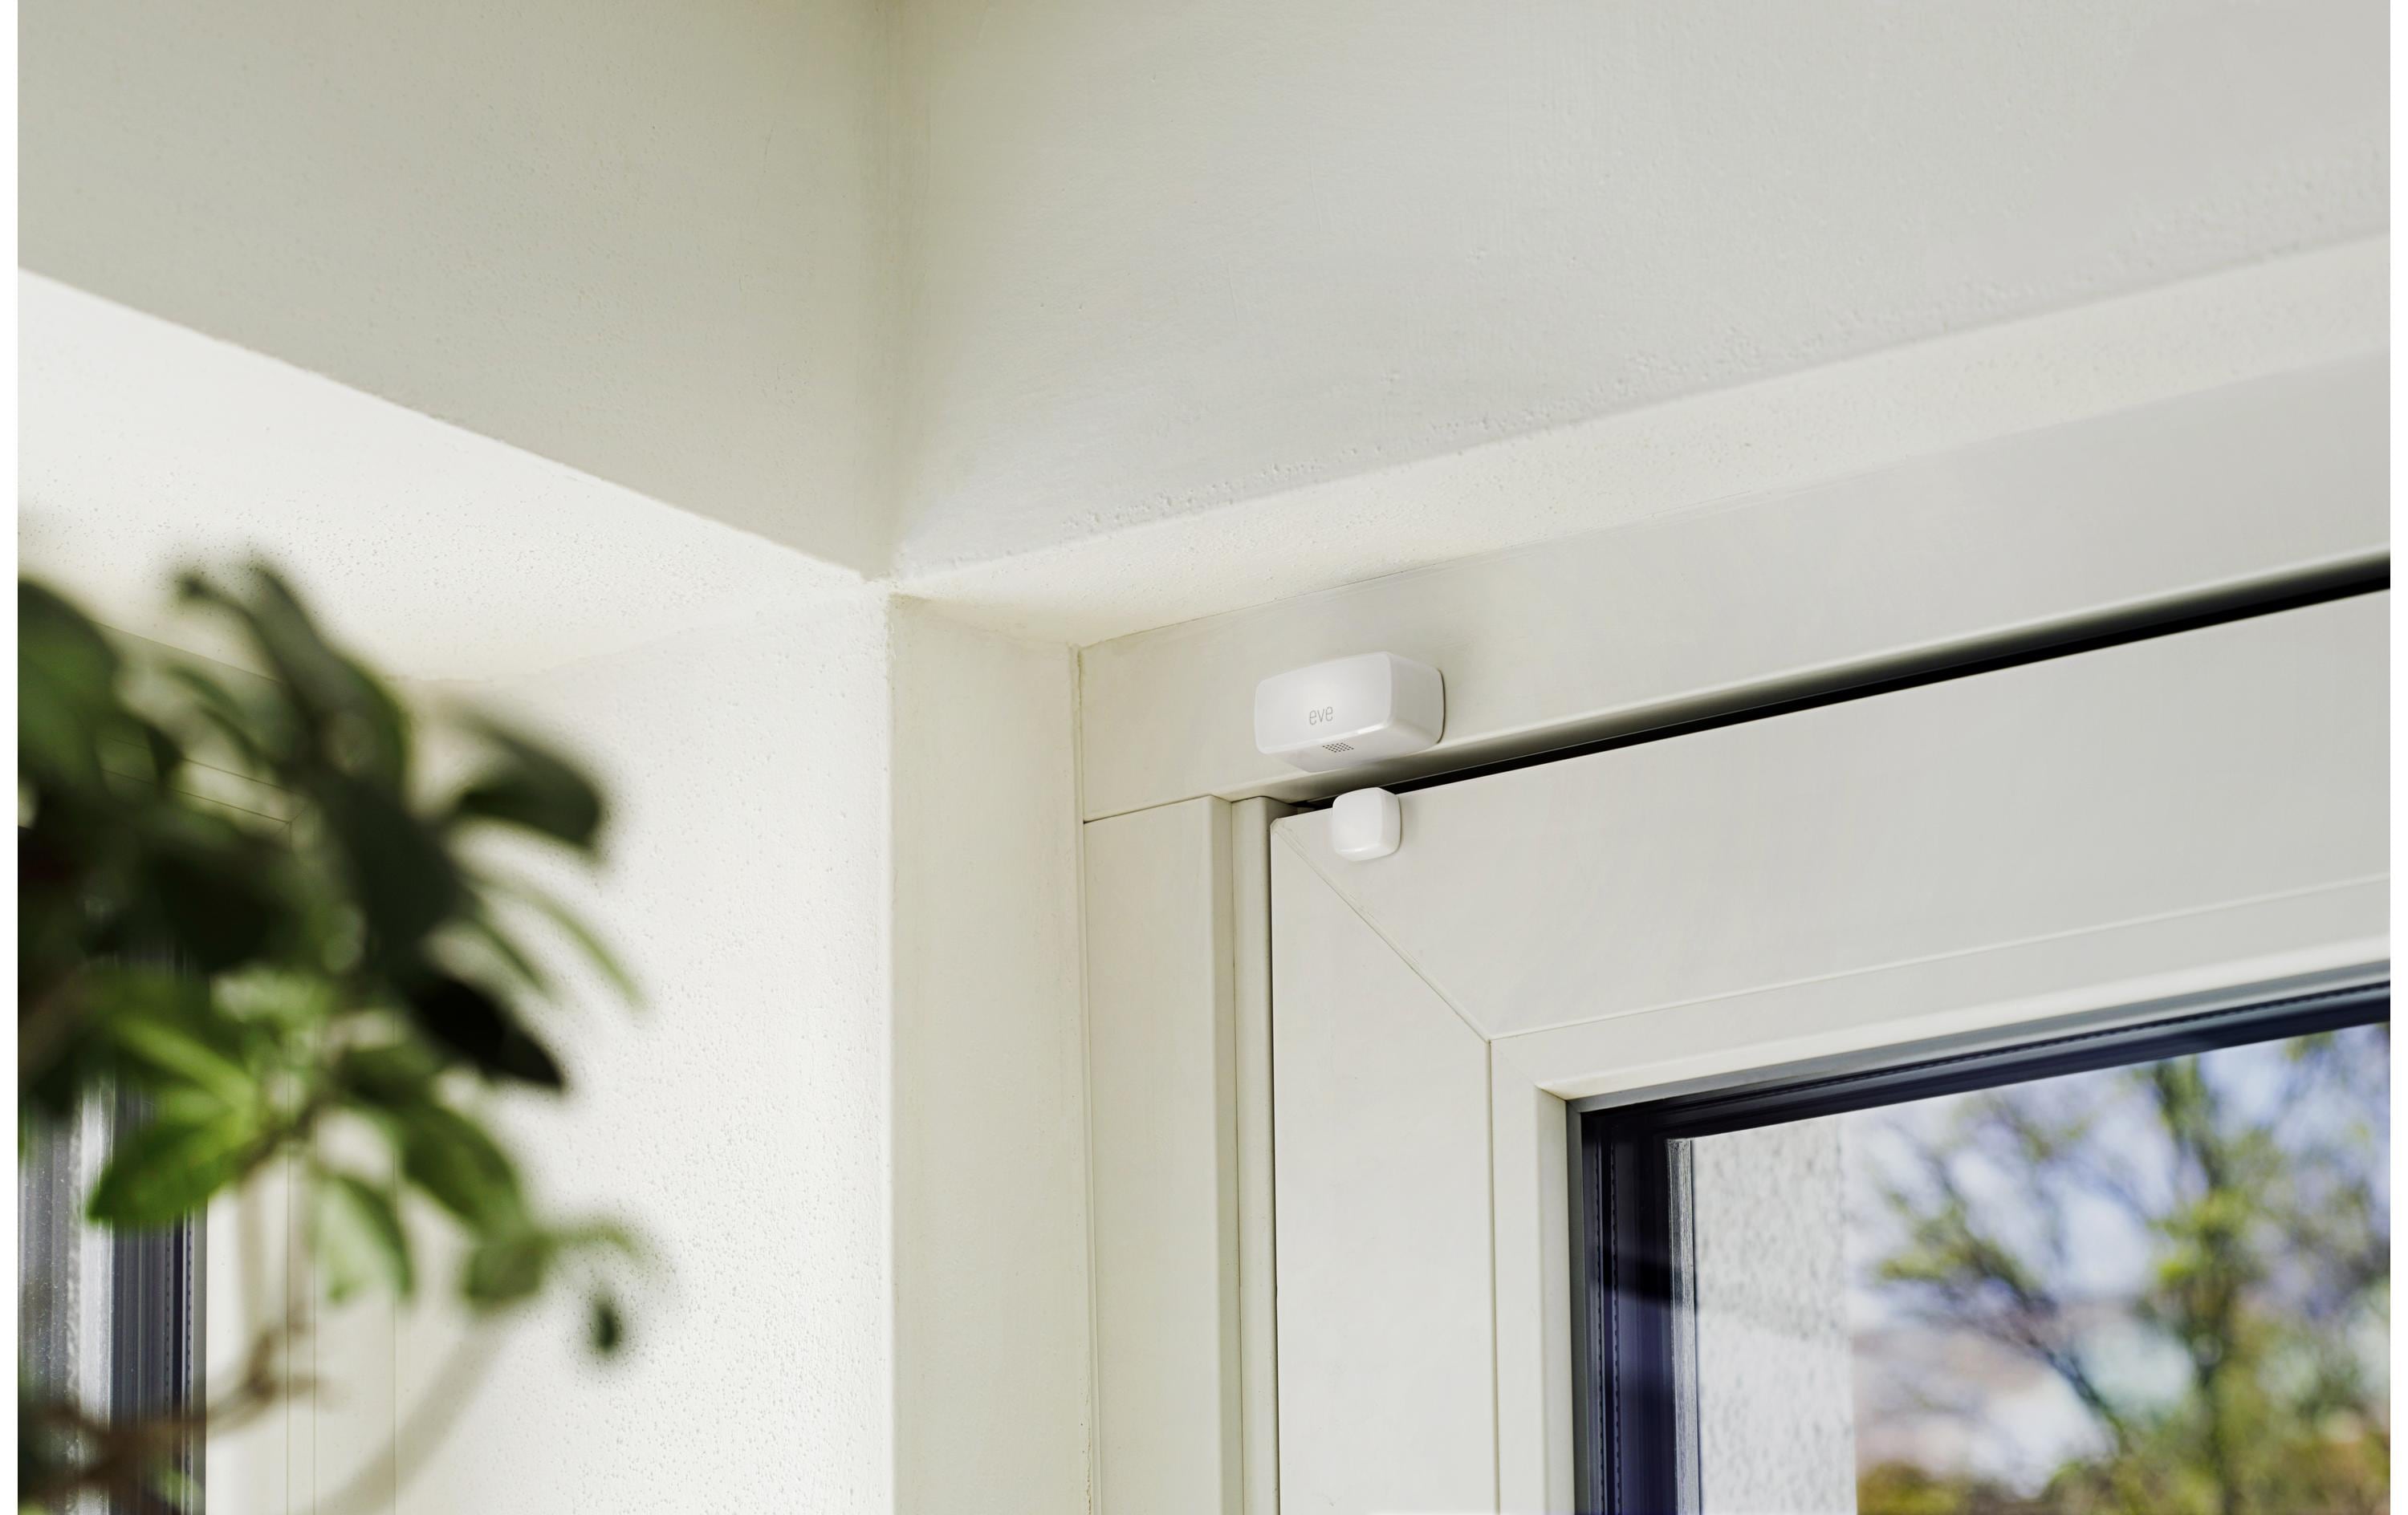 Eve Systems Smart Home Tür/Fenster Kontakt Sensor Door & Window Matter